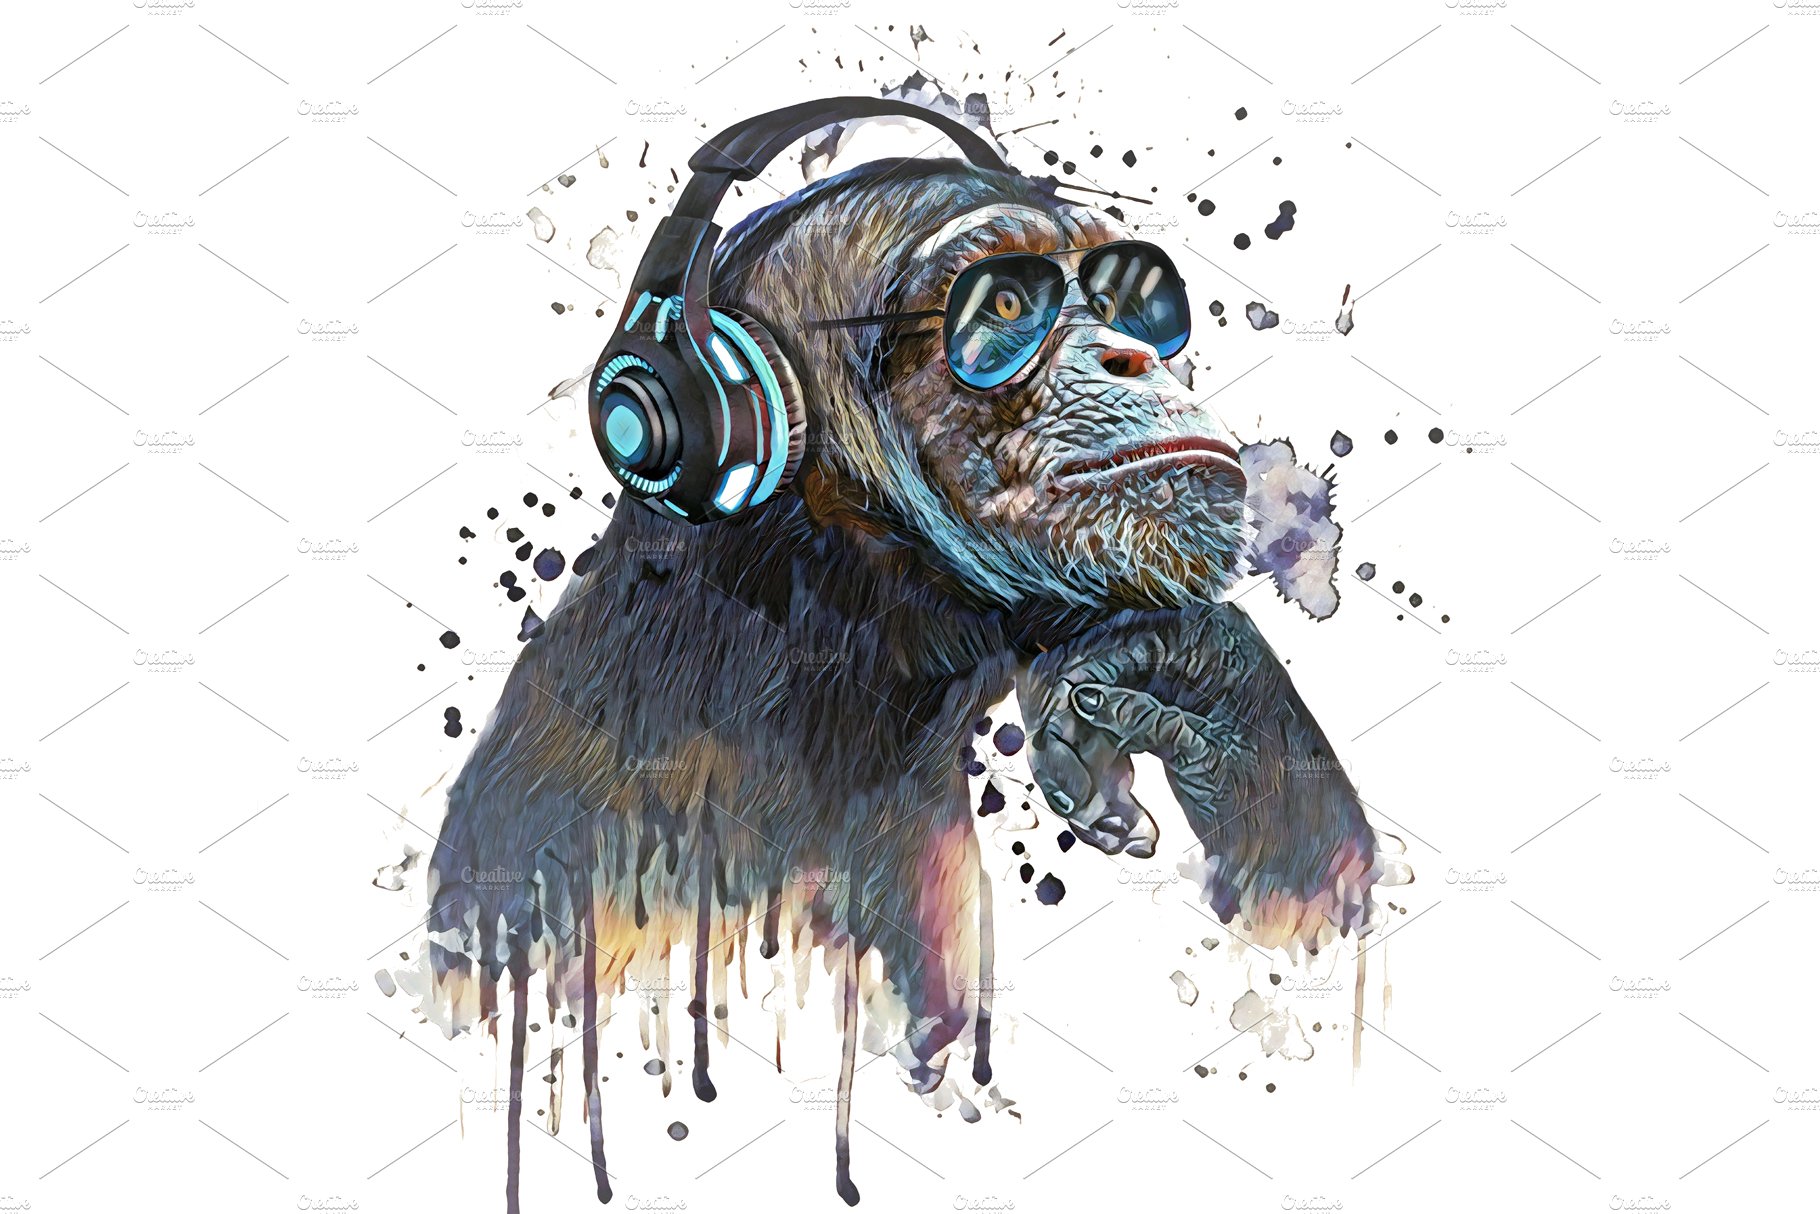 DJ chimpanzee - Monkey illustration cover image.